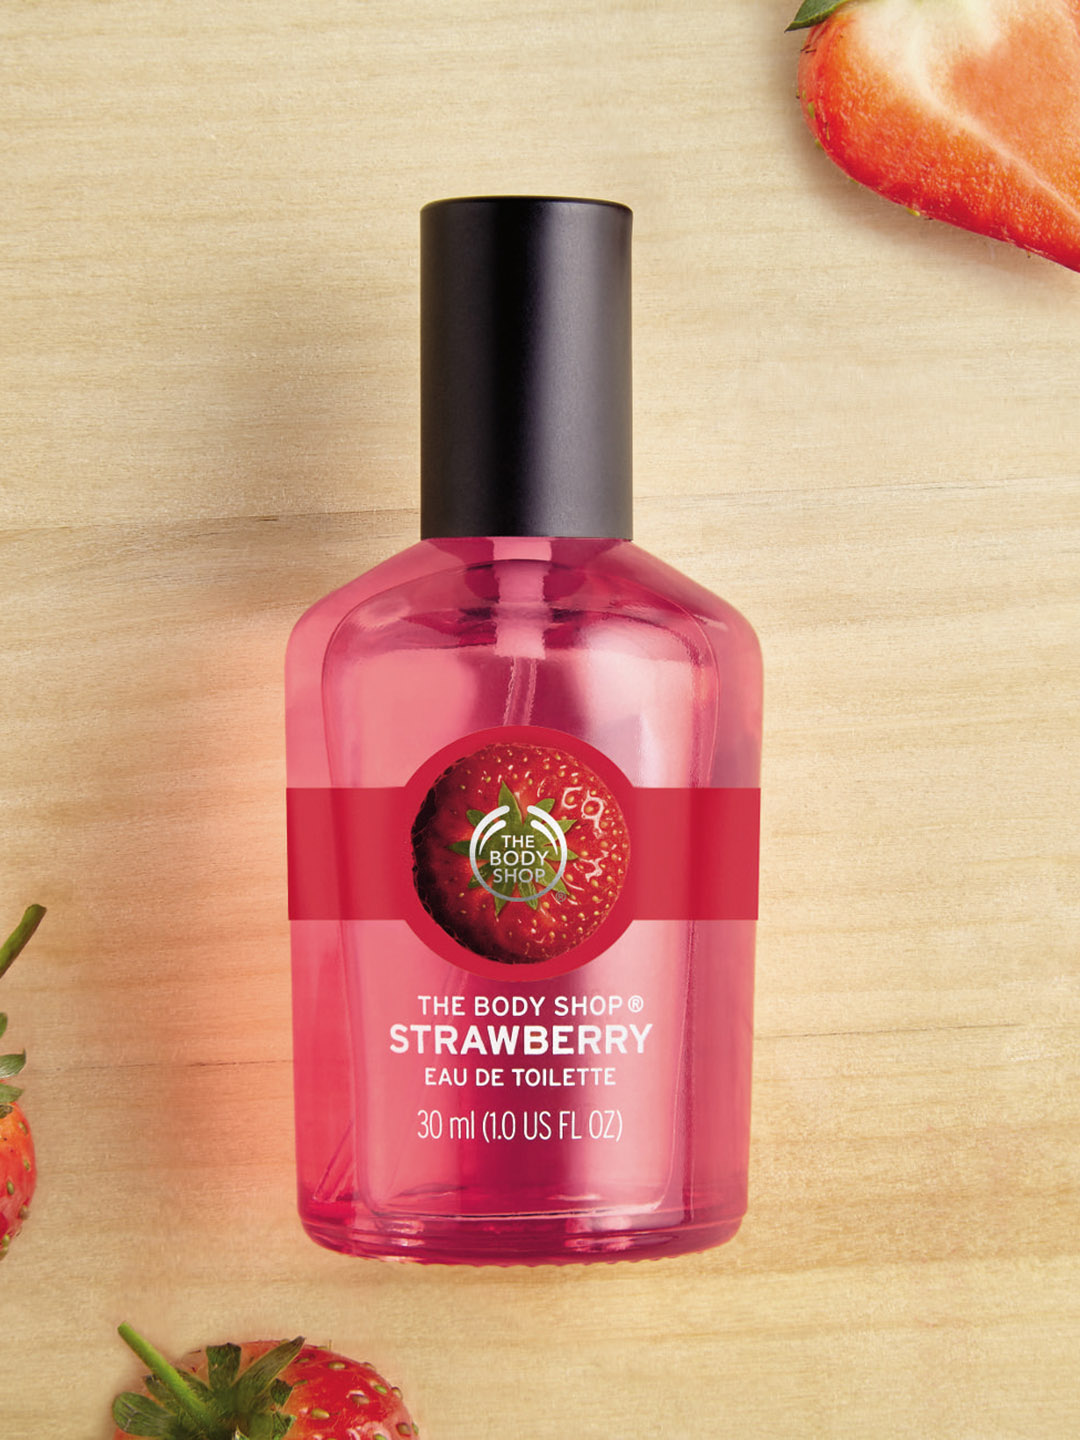 THE BODY SHOP Strawberry Eau De Toilette Perfume Price in India